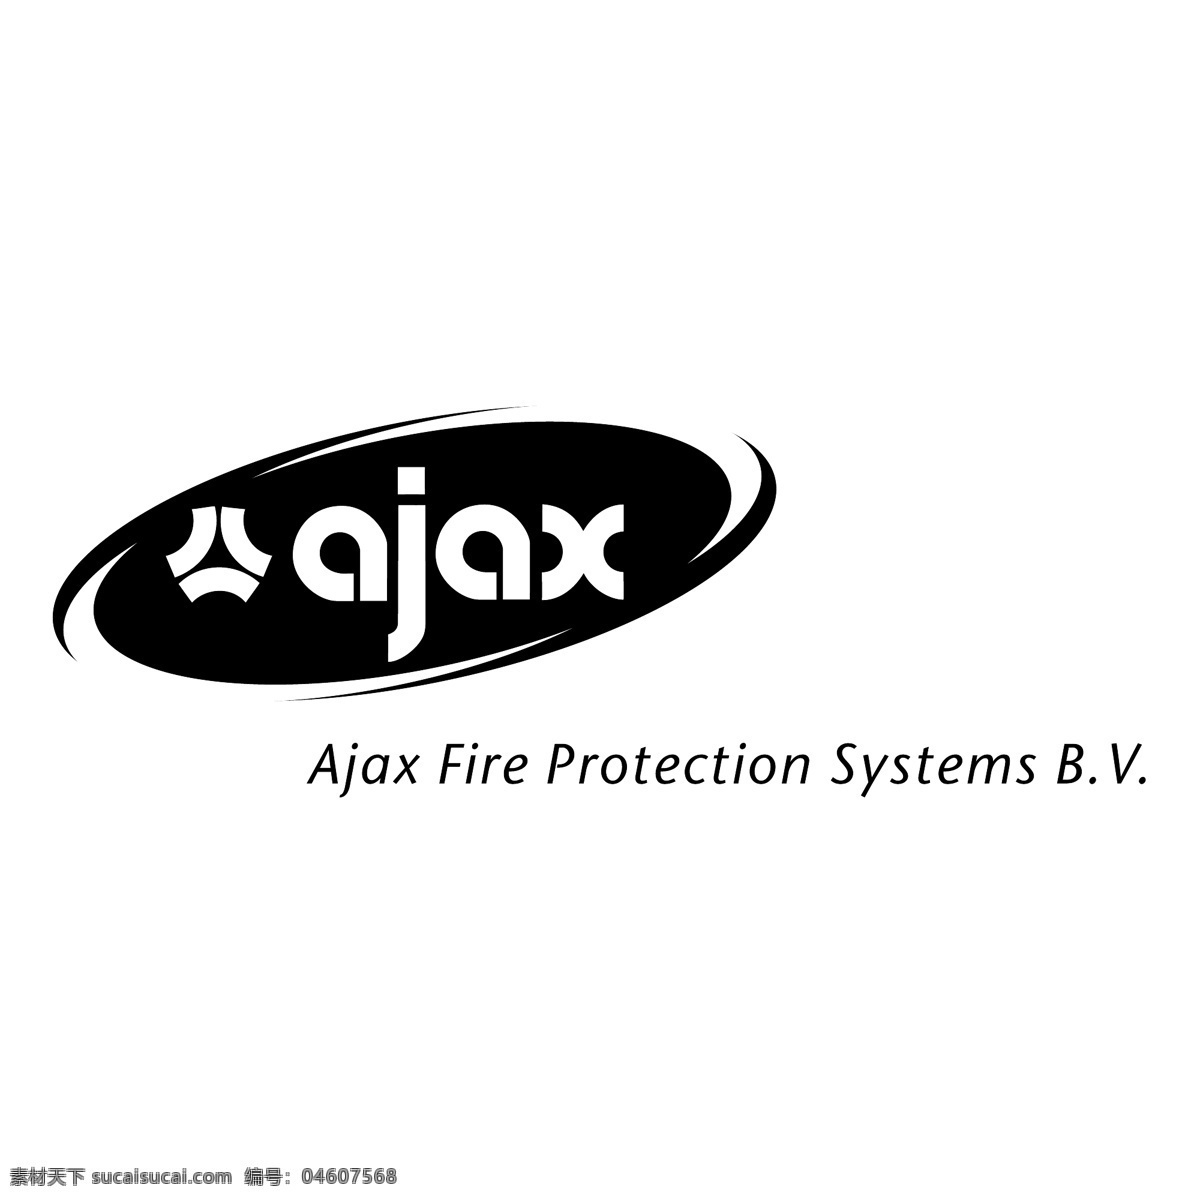 ajax 消防 系统 保护 火灾 保护系统 消防系统 向量 向量消防 自由的标志 消防保护系统 标志 向量的火 矢量图 建筑家居